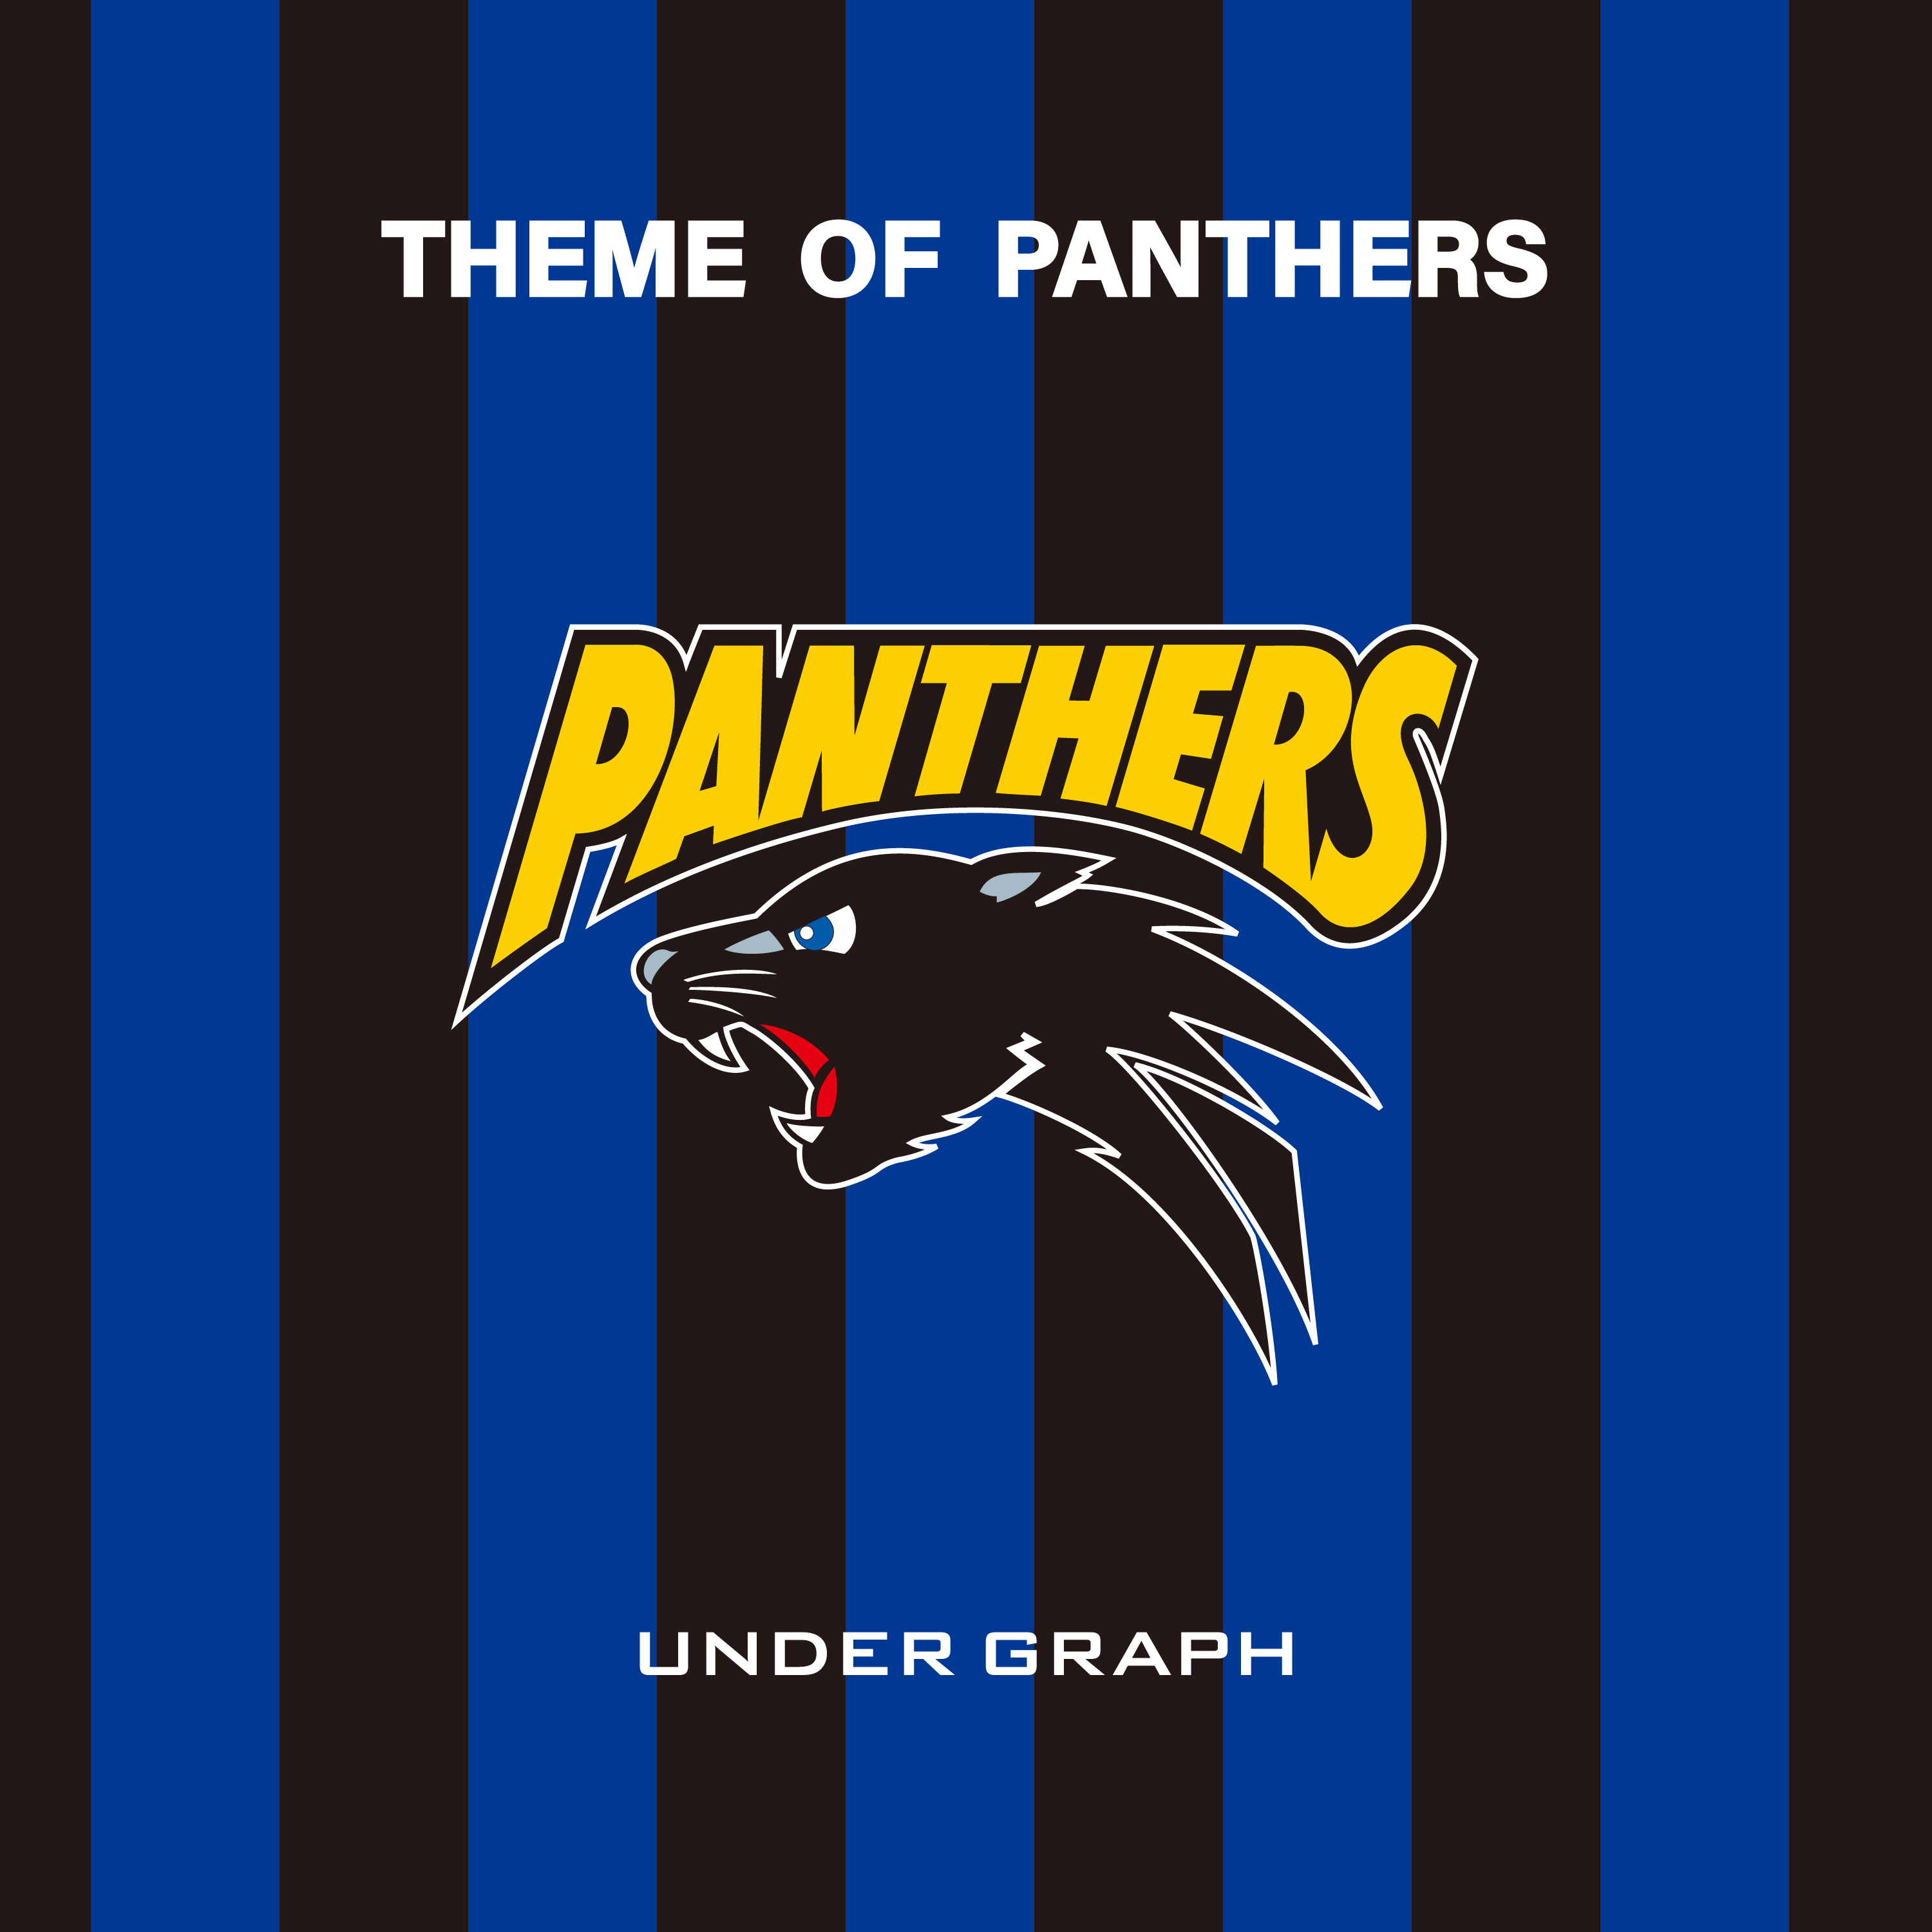 Panthers_jk